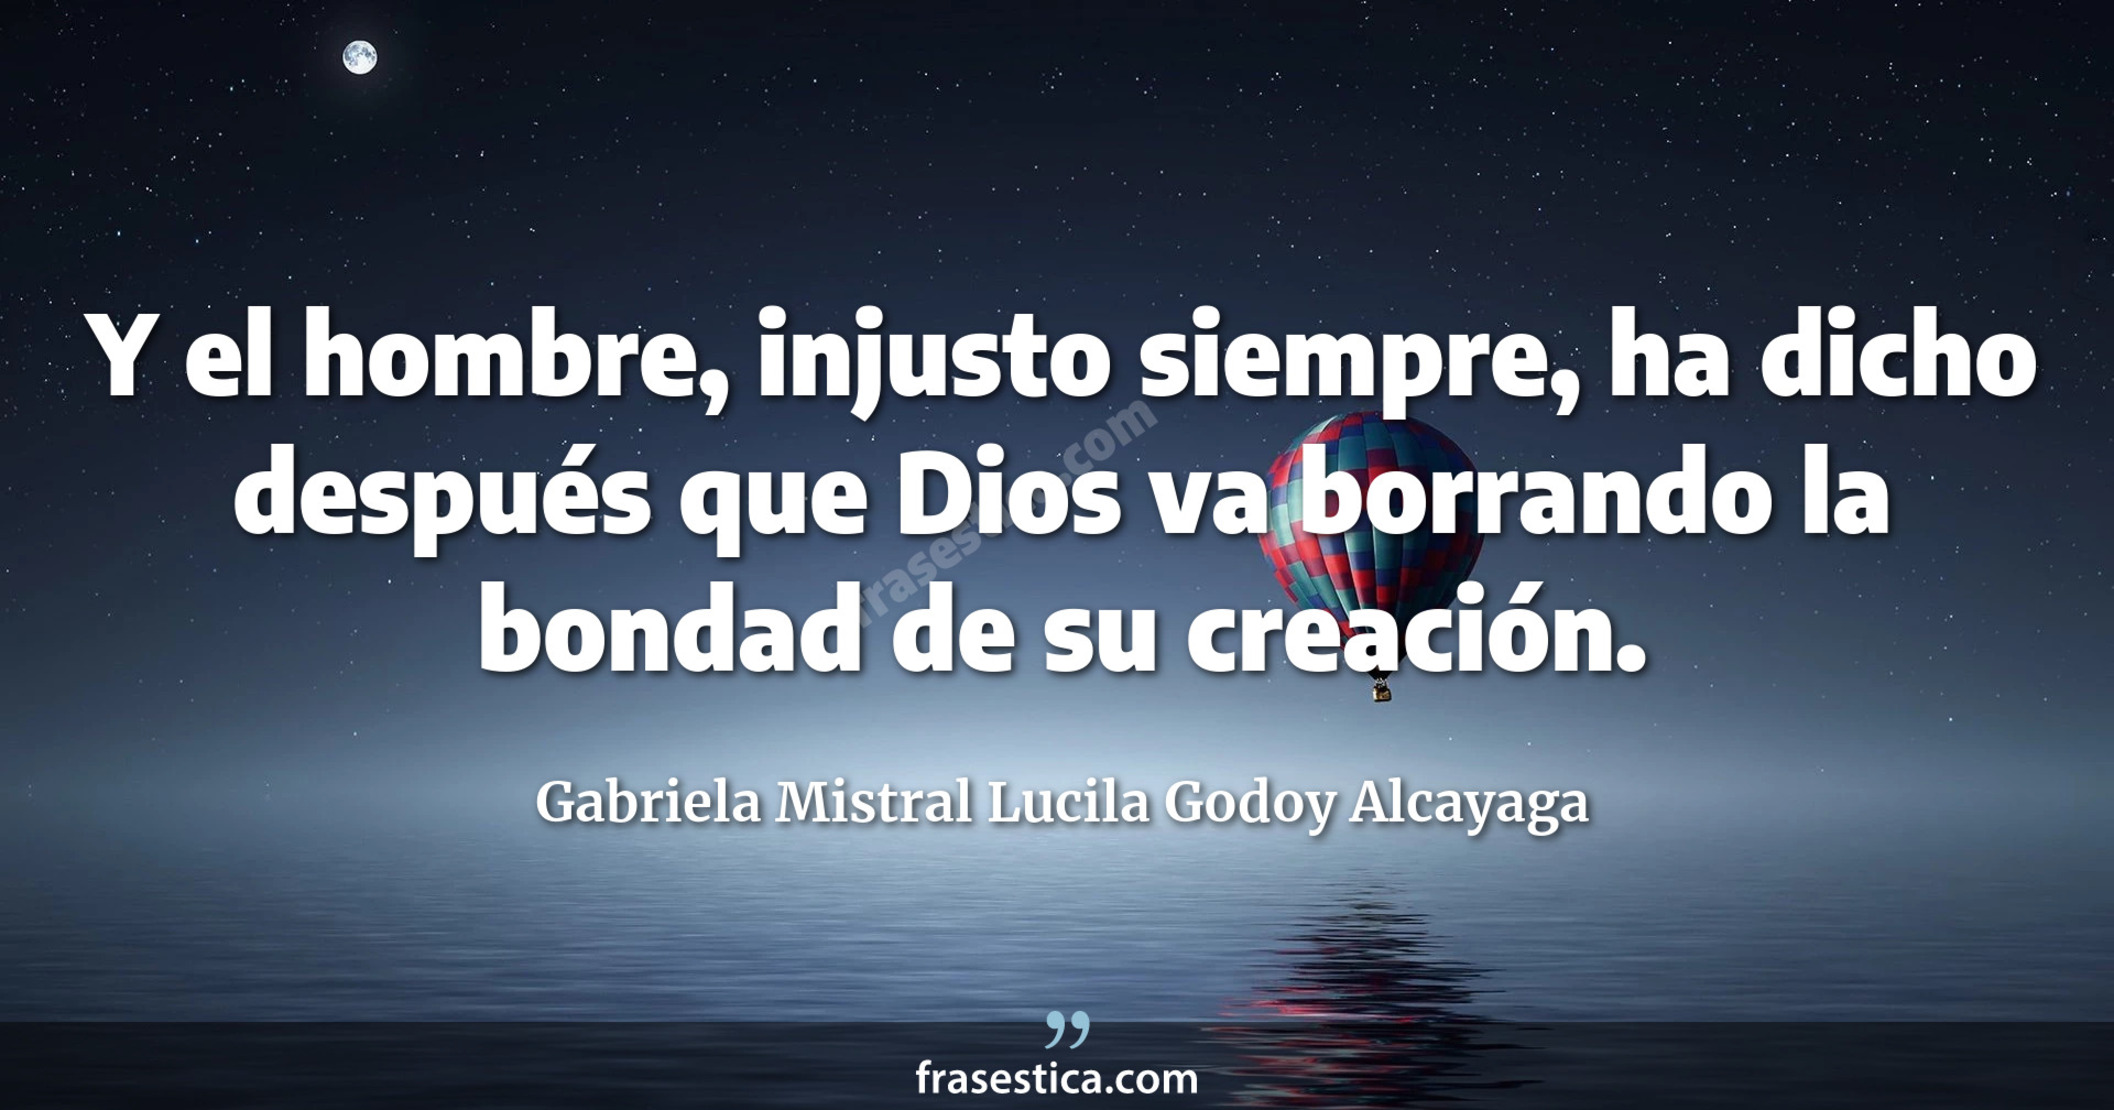 Y el hombre, injusto siempre, ha dicho después que Dios va borrando la bondad de su creación. - Gabriela Mistral Lucila Godoy Alcayaga